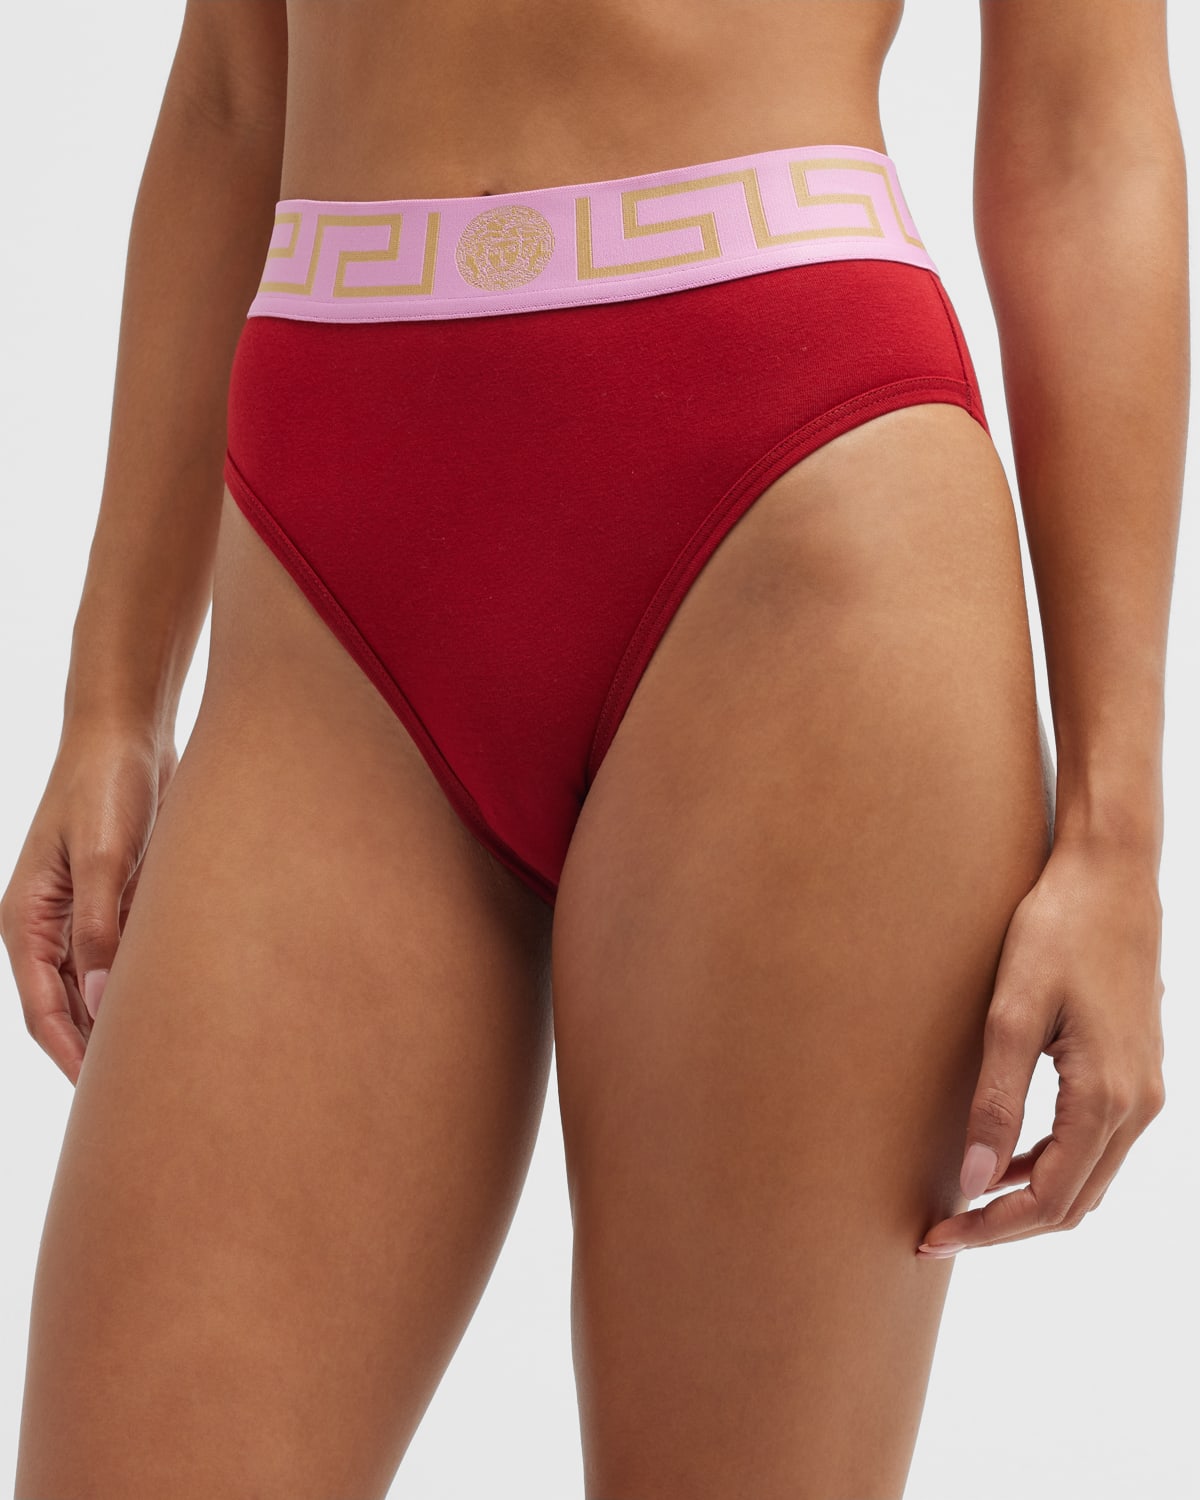 Red Greca Border Bra by Versace Underwear on Sale